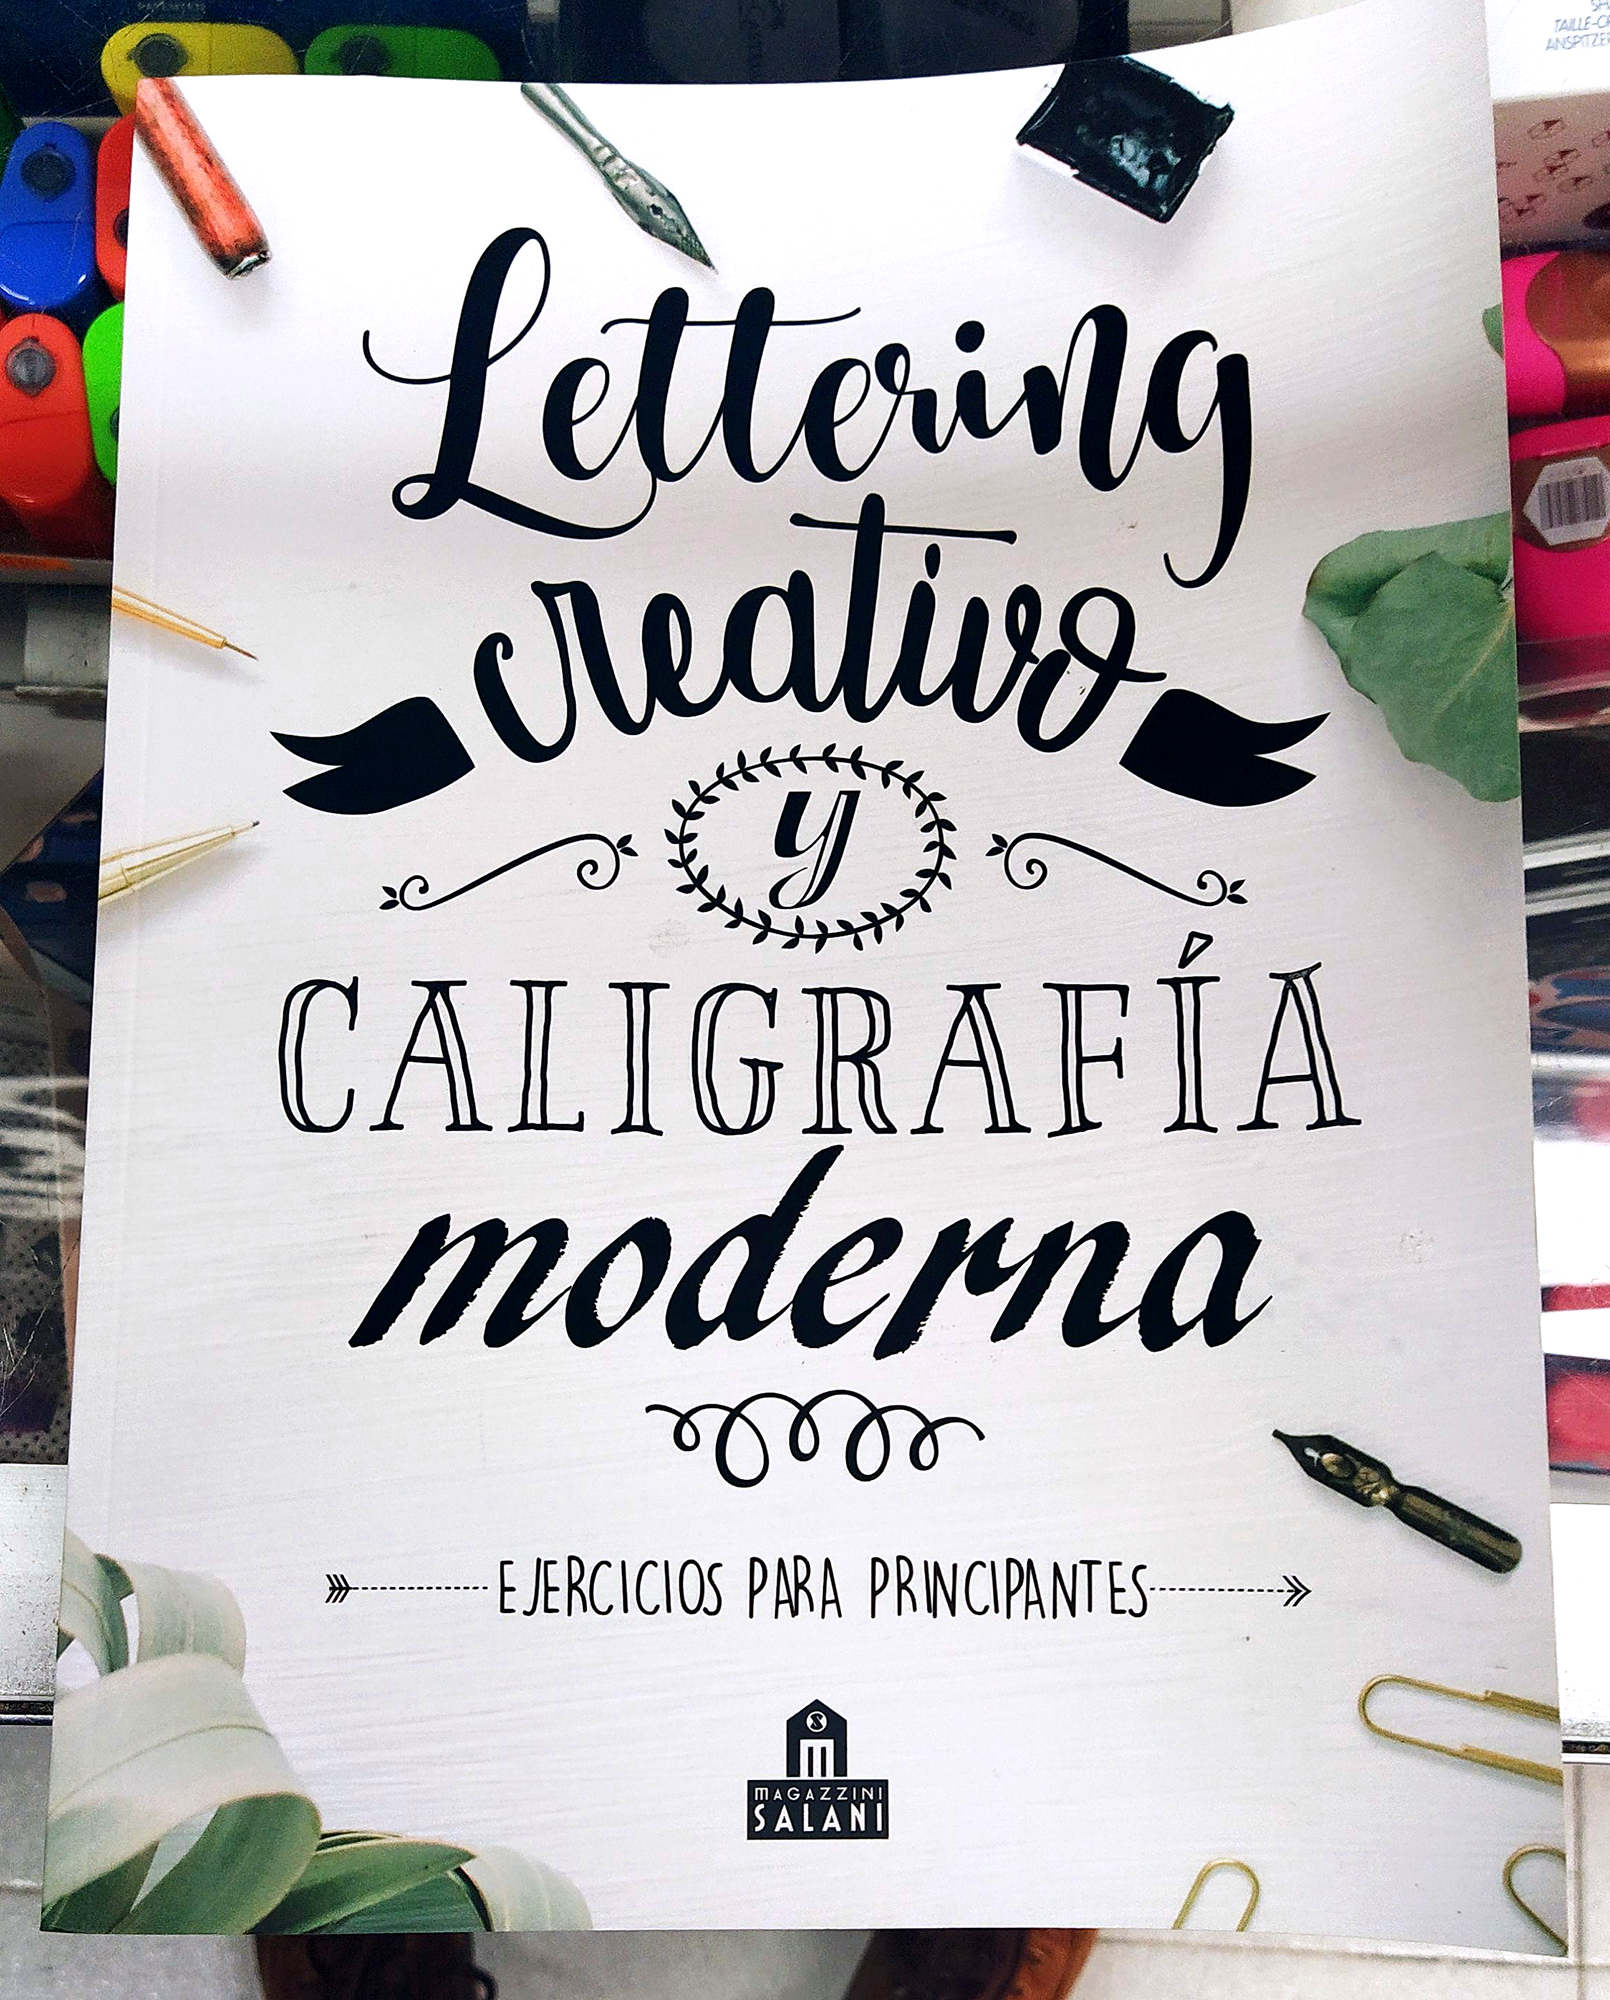 Lettering creativo y caligrafía moderna para niños. Volumen 2